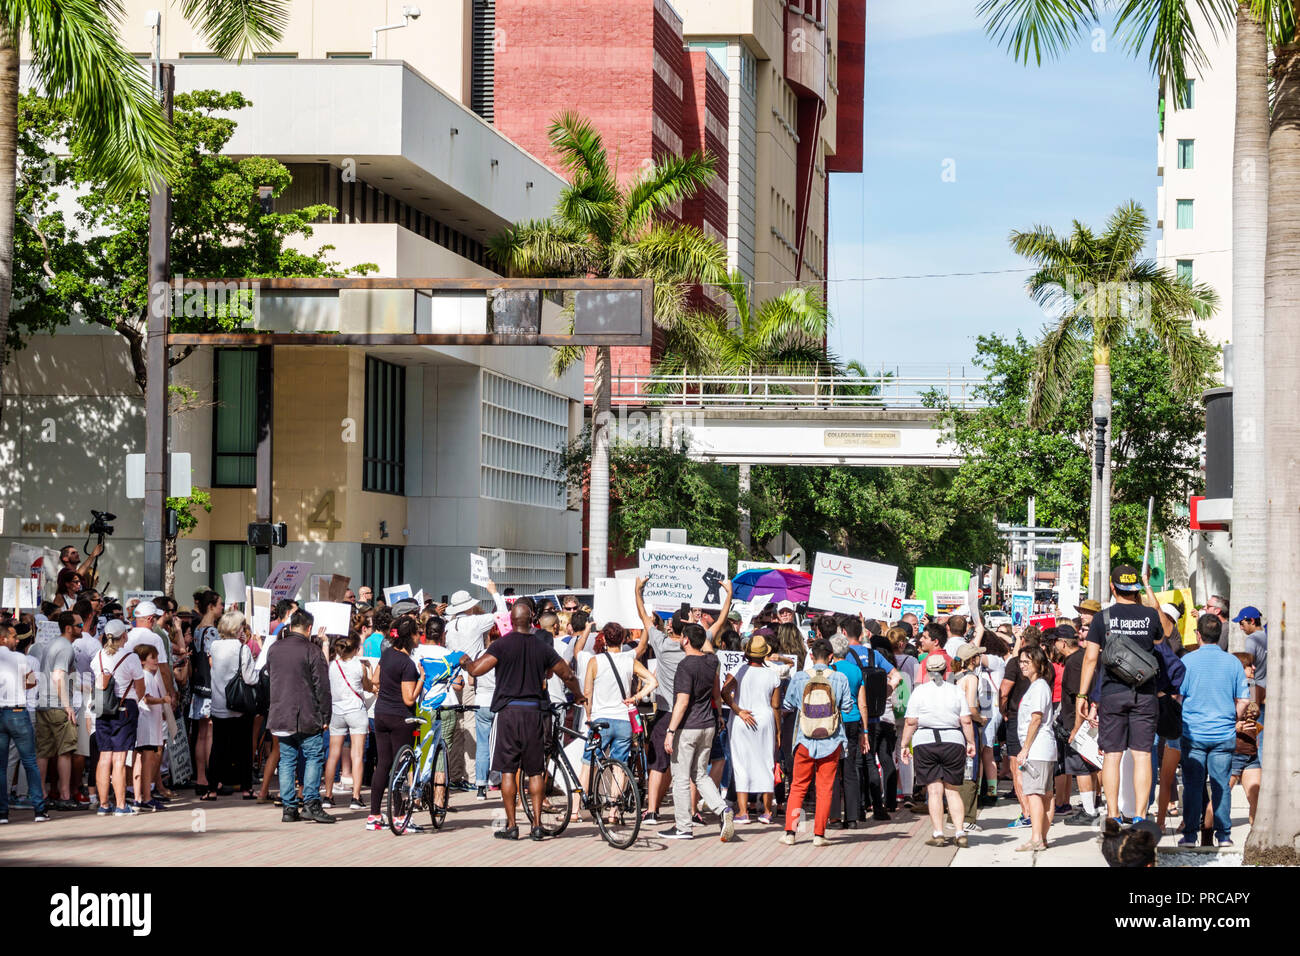 Miami Florida, Demonstration gegen Protestdemonstration, Familien gehören zusammen Freie Kinder illegale Einwanderung, mexikanische Grenzfamilie Separati Stockfoto